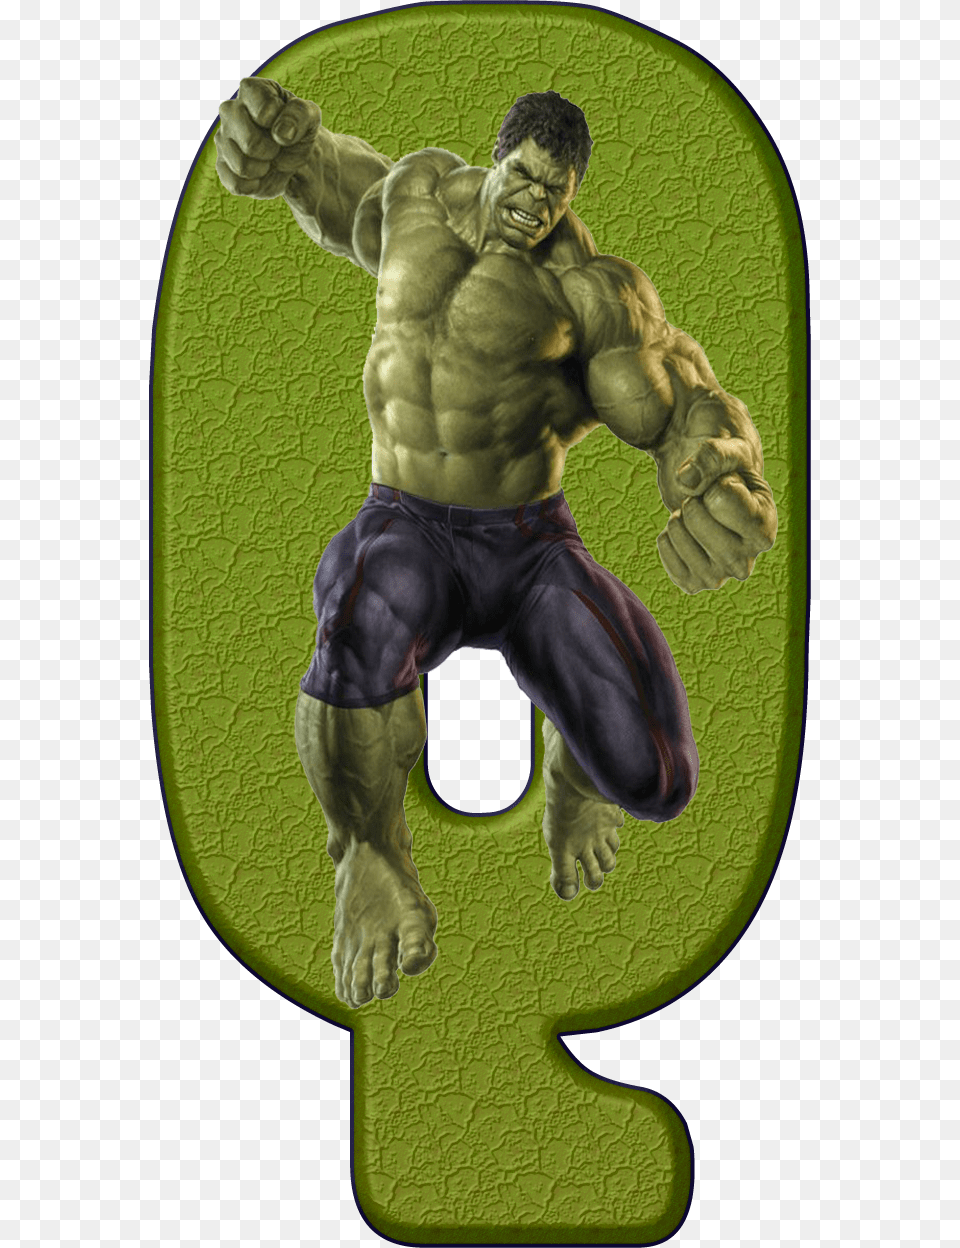 Letra E De Hulk Letra O De Super Heroes, Adult, Male, Man, Person Png Image